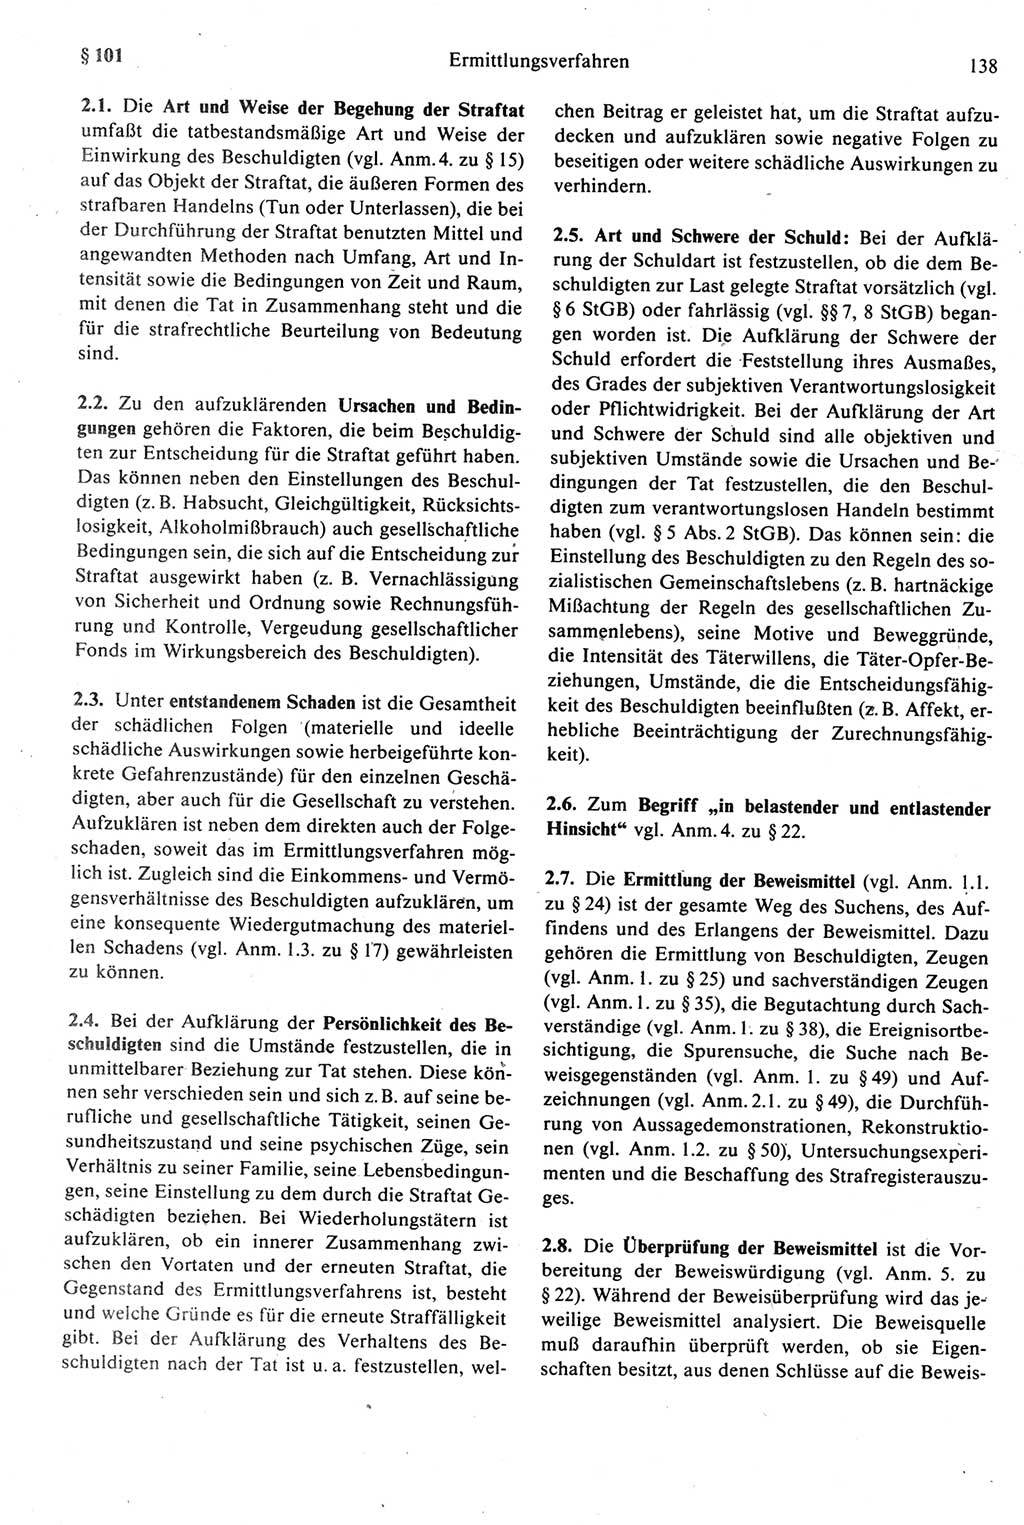 Strafprozeßrecht der DDR [Deutsche Demokratische Republik], Kommentar zur Strafprozeßordnung (StPO) 1987, Seite 138 (Strafprozeßr. DDR Komm. StPO 1987, S. 138)